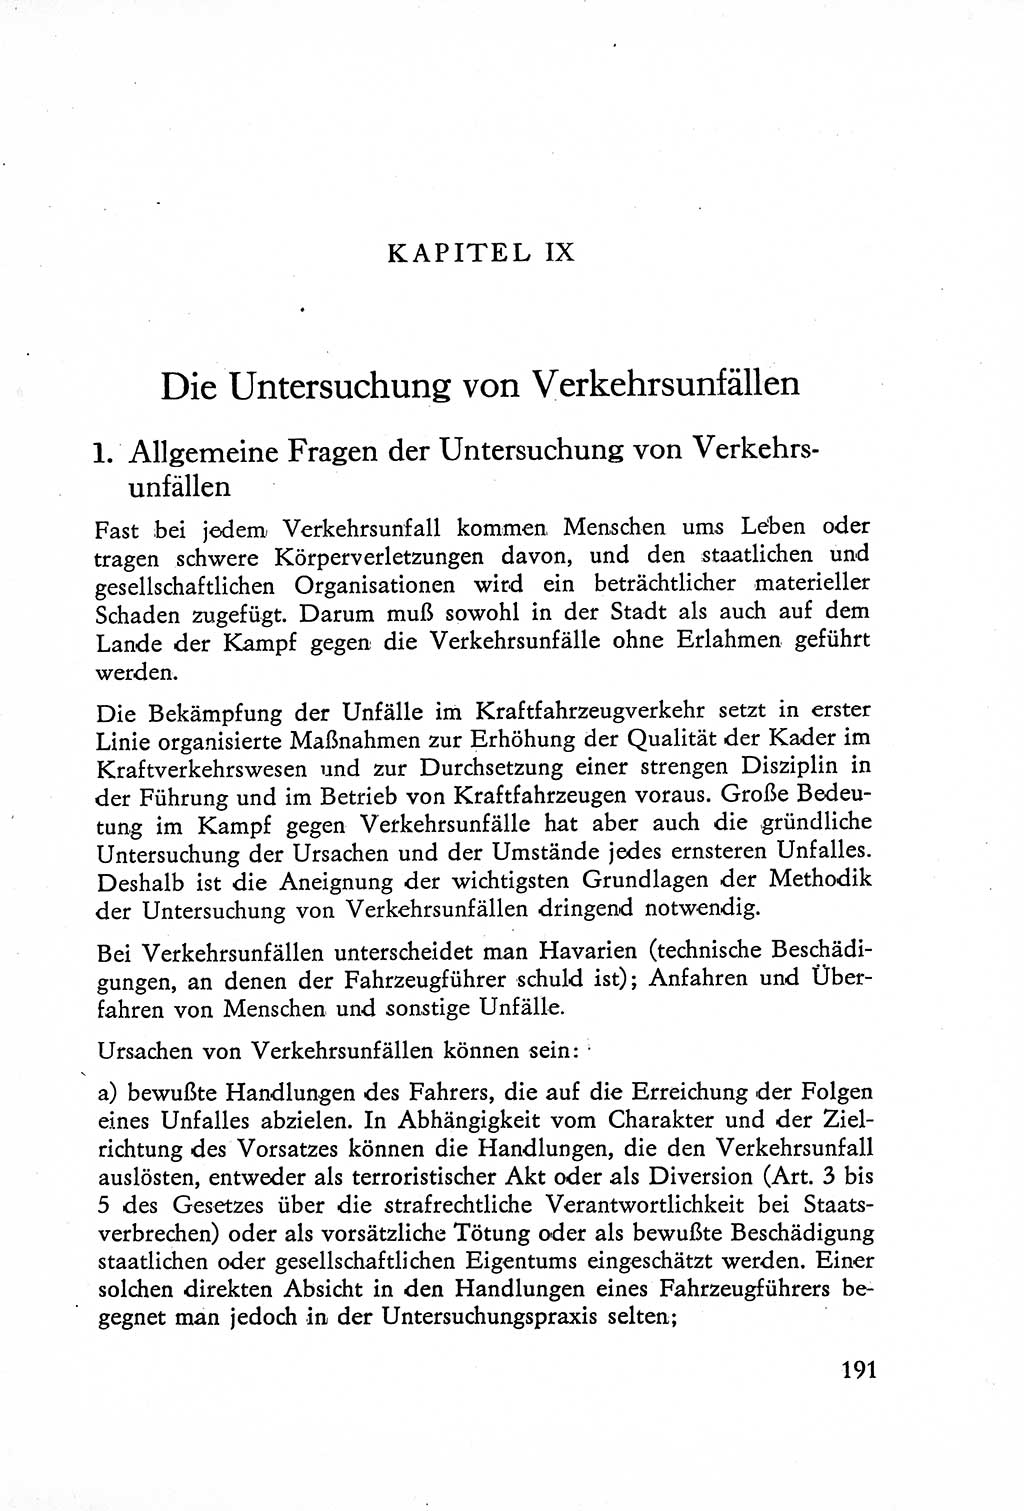 Die Untersuchung einzelner Verbrechensarten [Deutsche Demokratische Republik (DDR)] 1960, Seite 191 (Unters. Verbr.-Art. DDR 1960, S. 191)